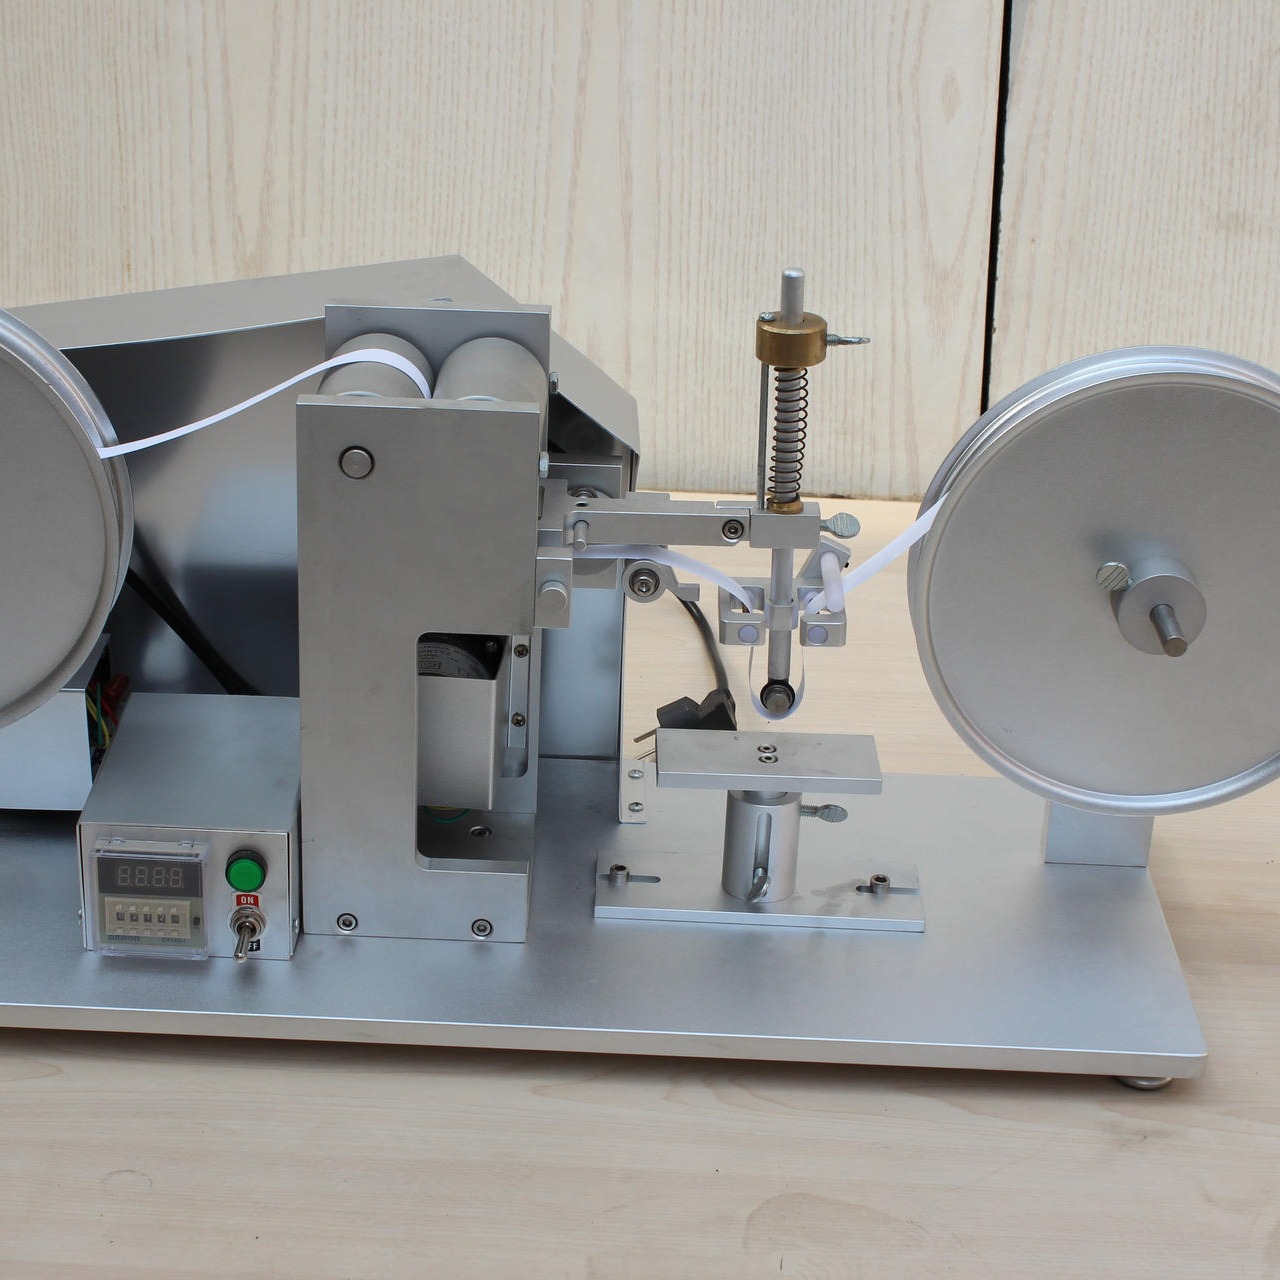 海莱斯HLS-9006 RCA纸带耐磨试验机 用于各种表面涂装(电镀、烤漆、丝印等）试品之耐磨擦试验图片